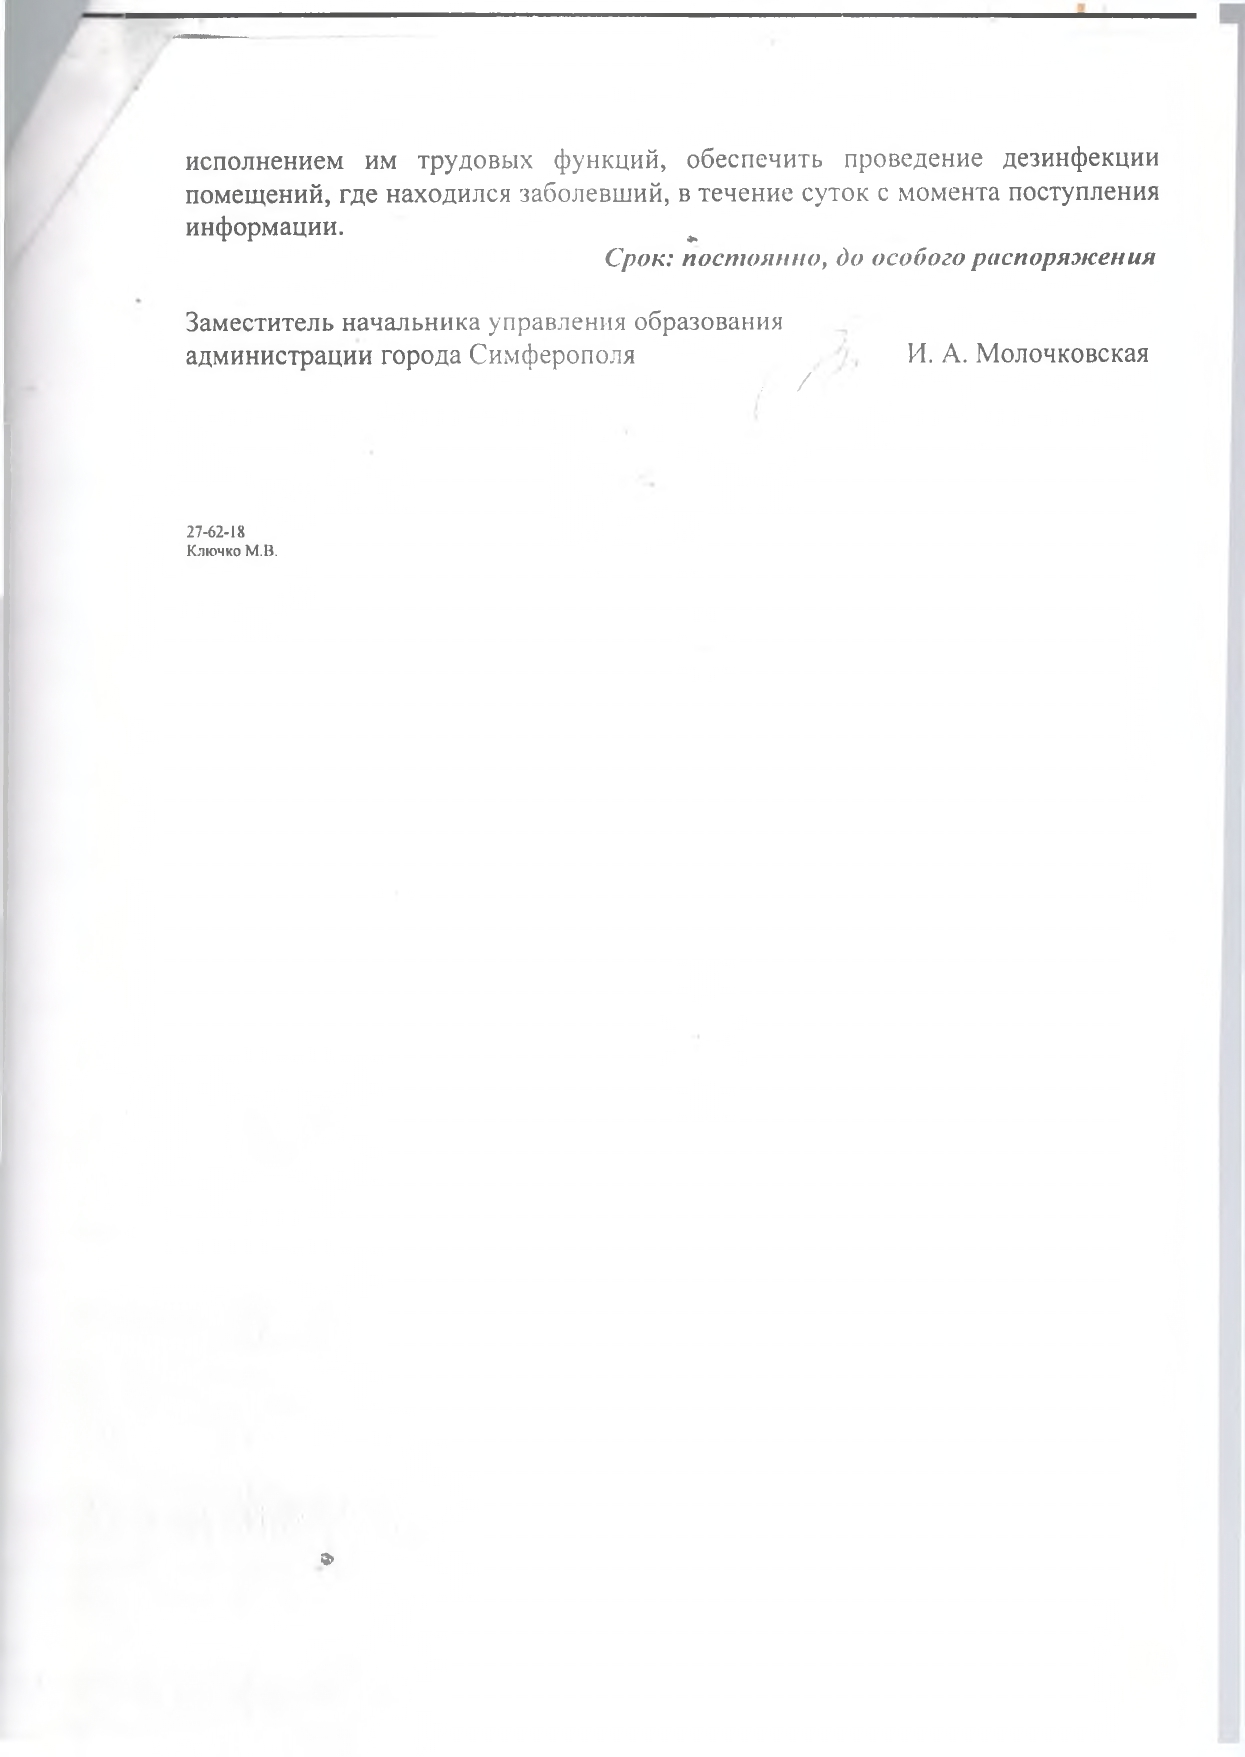 нормативные документы коронавирус page 0002